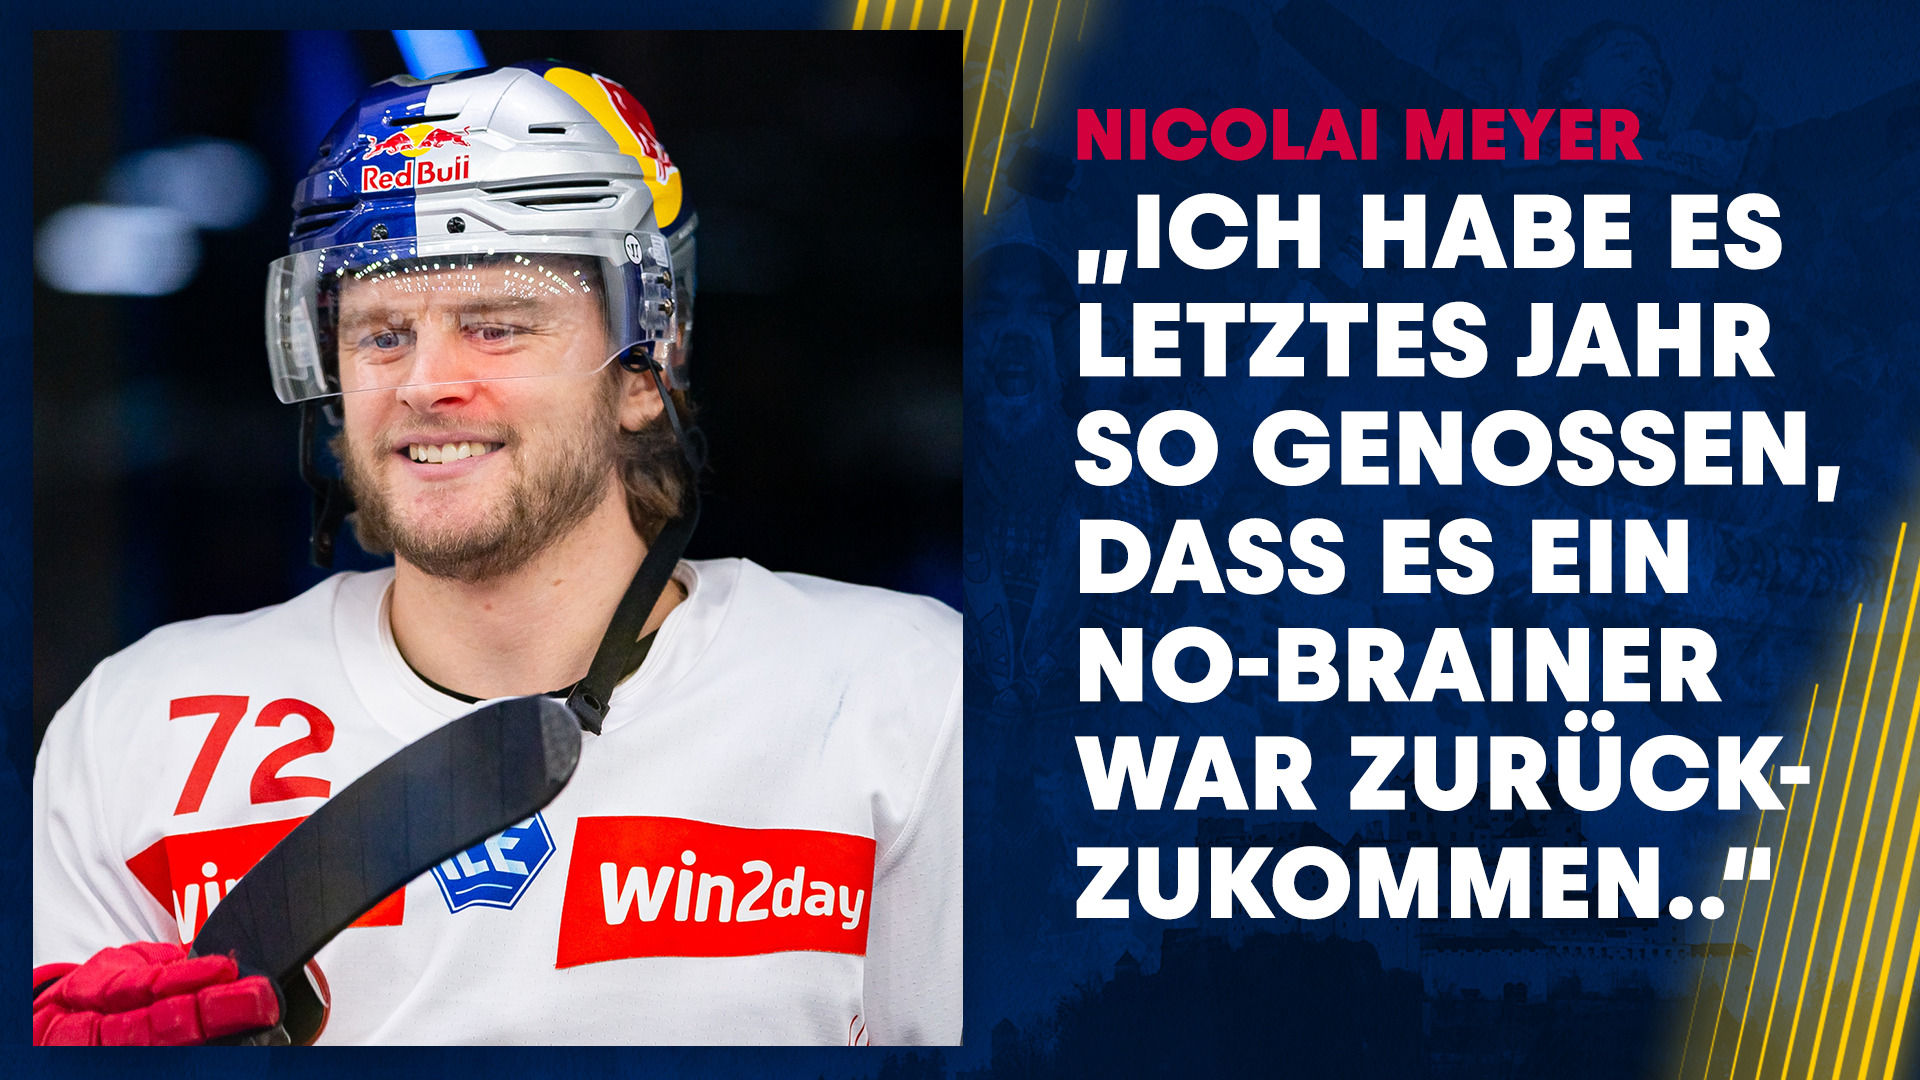 Welcome back: Nicolai Meyer